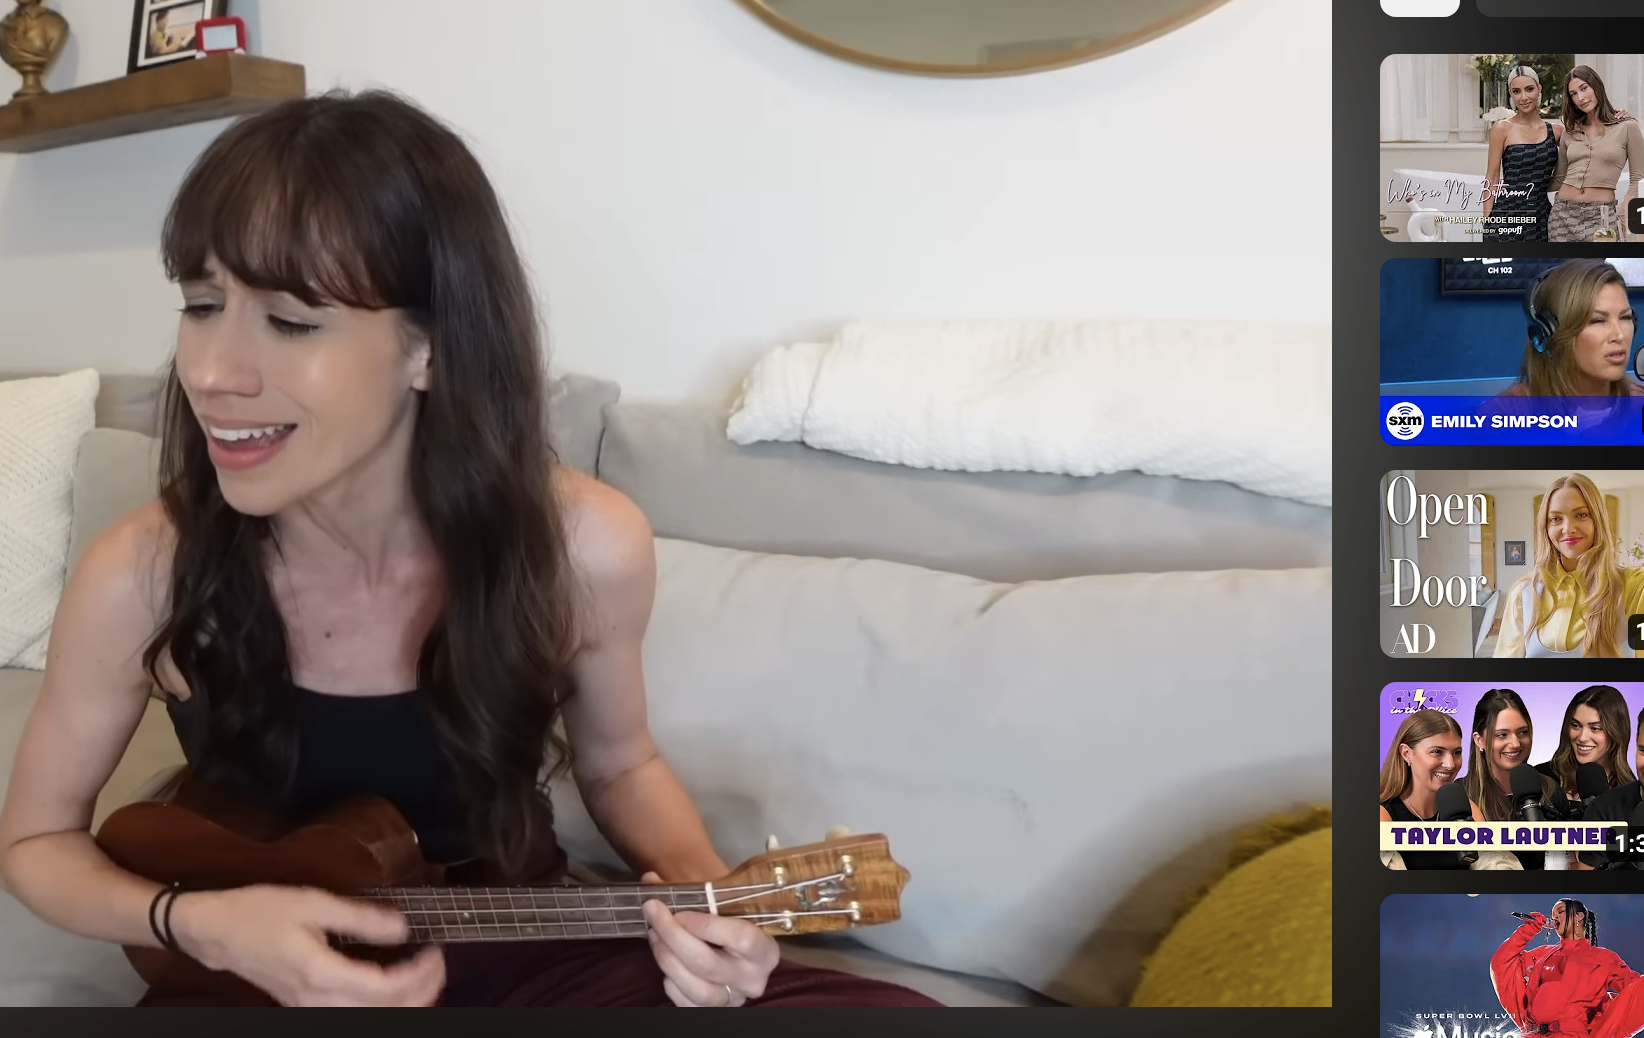 Colleen singing while playing ukulele